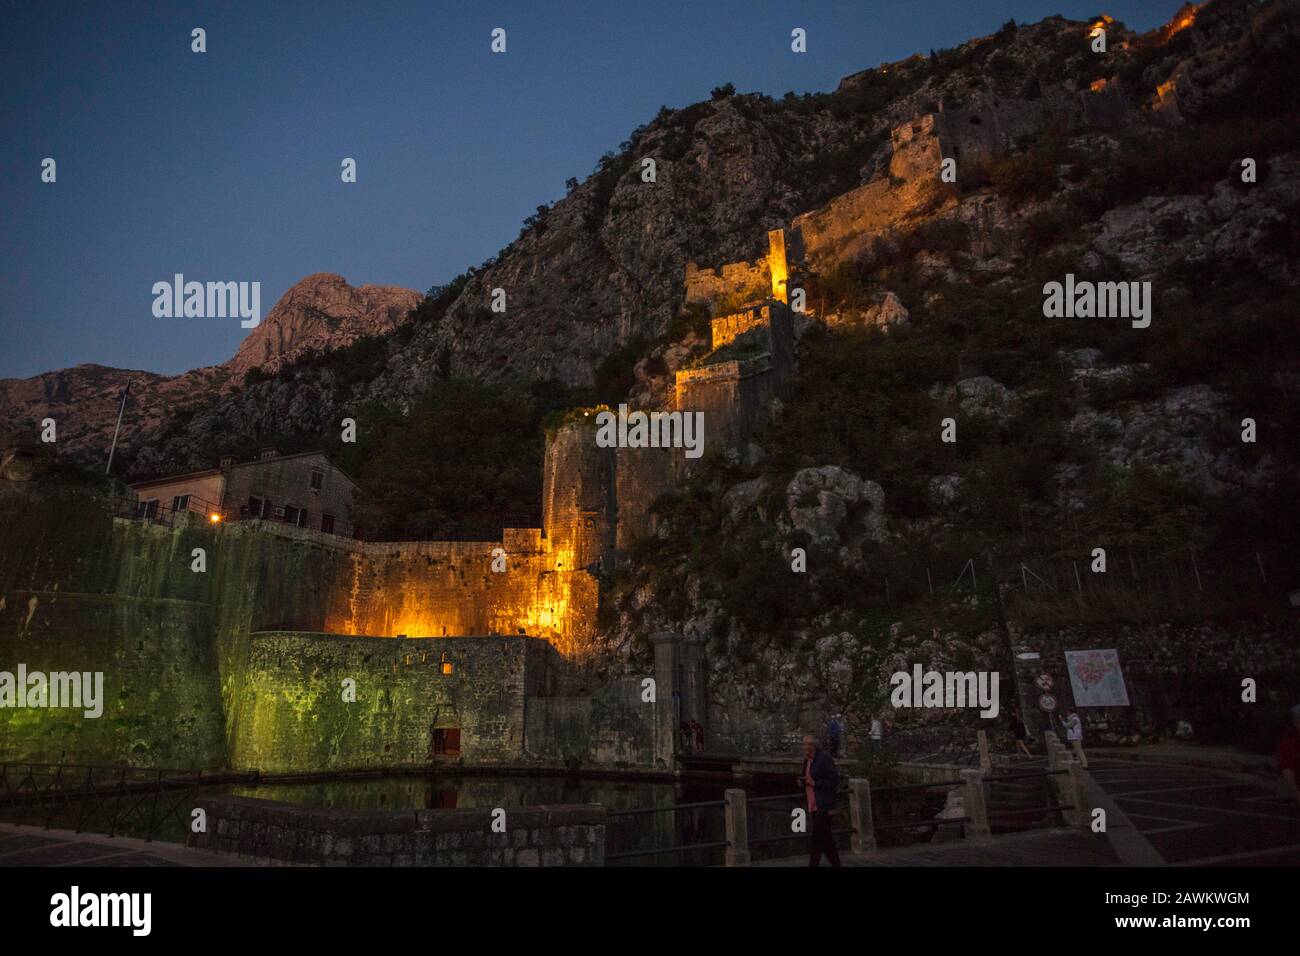 Vue nocturne sur les murs de la ville de Kotor, l'église catholique Notre-Dame de Remedy et la forteresse St-Jean. Vieille ville de Kotor. Monténégro Banque D'Images